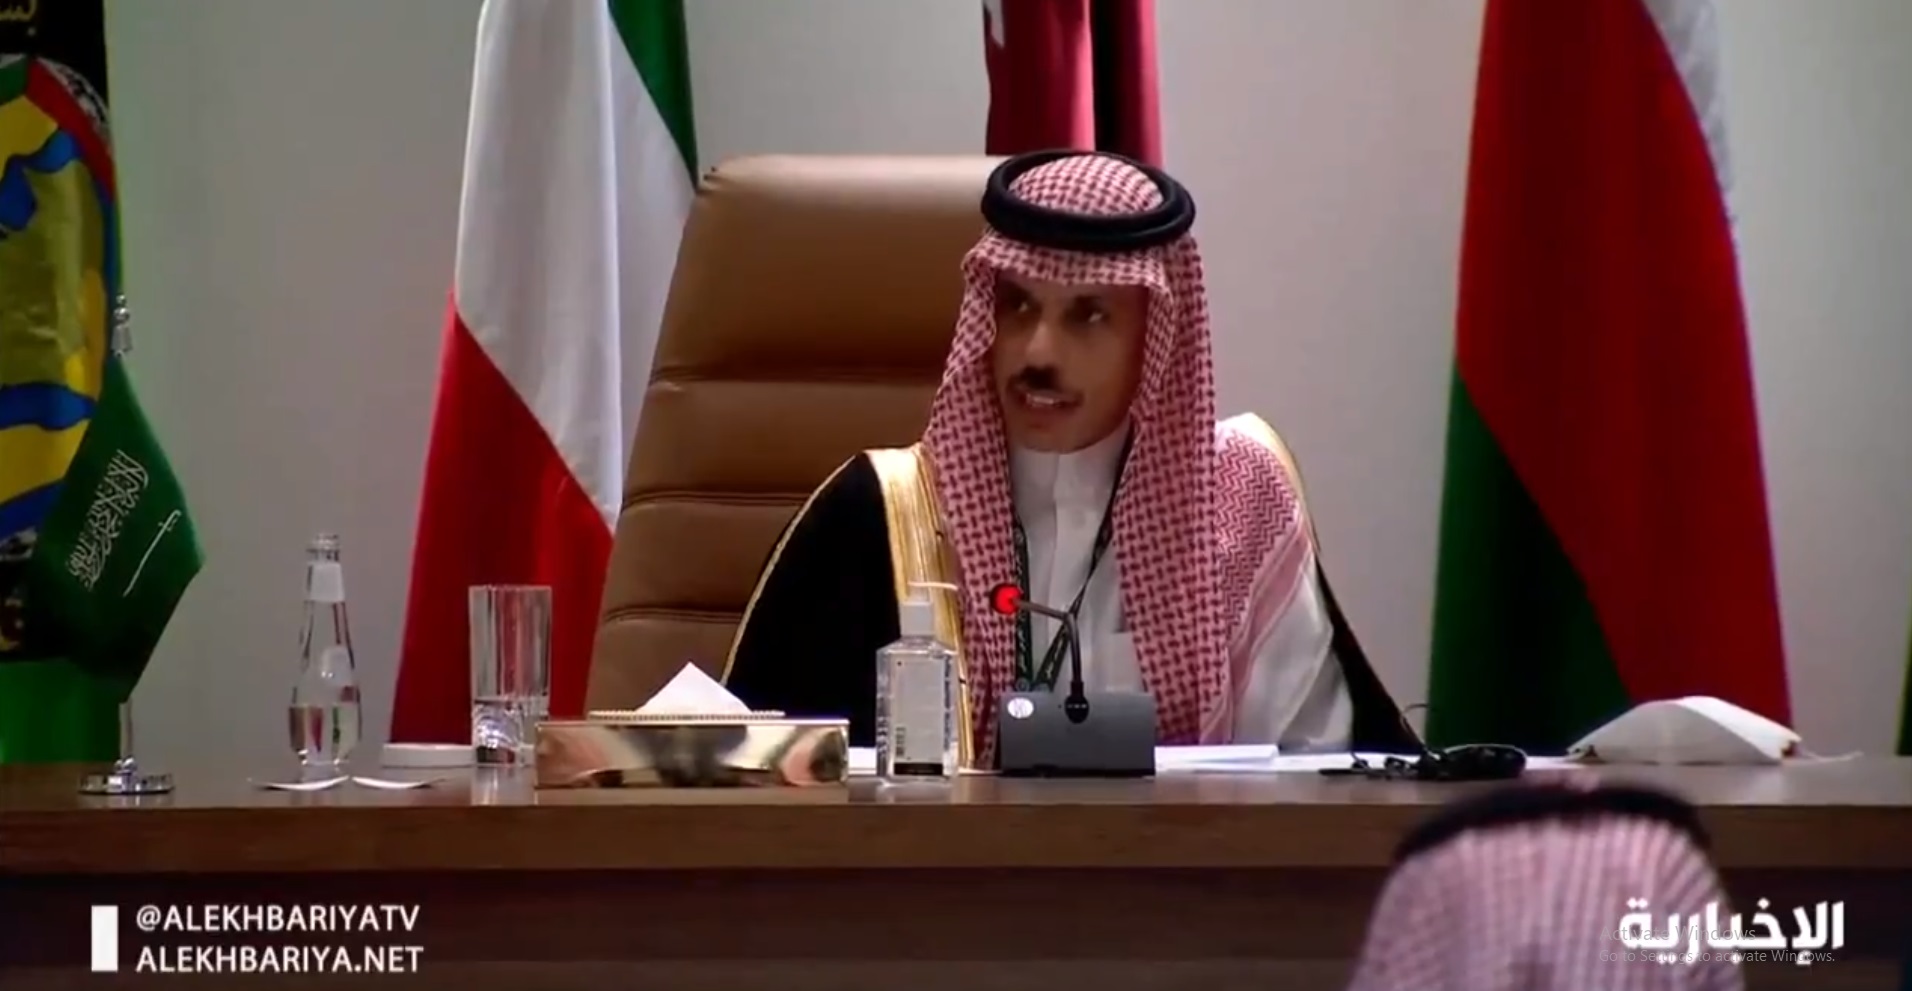 فيديو.. لحظة إعلان وزير الخارجية طي الخلاف مع قطر بشكل كامل